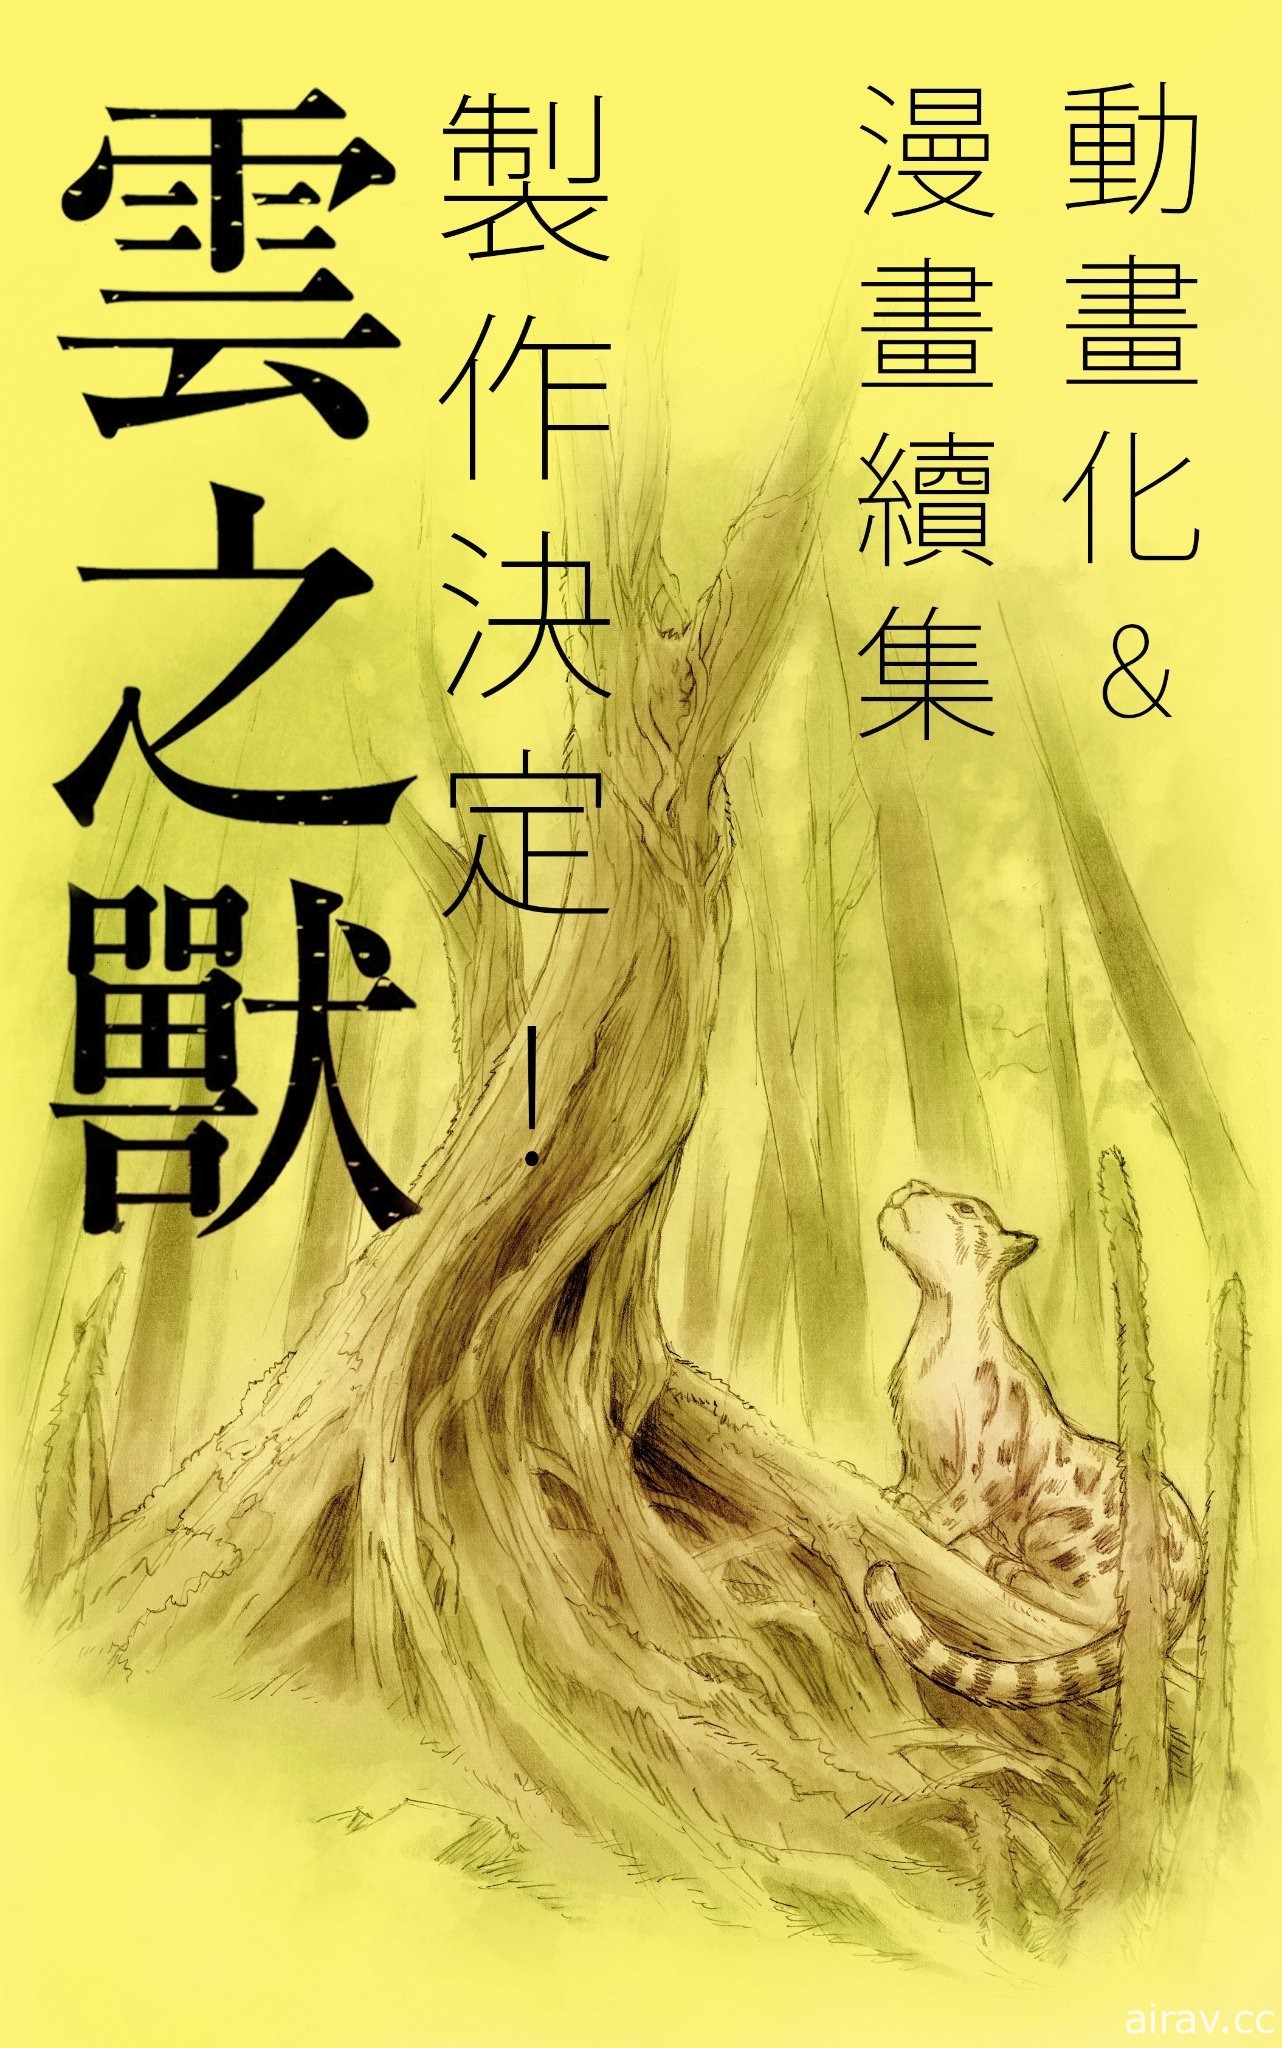 臺灣博物館與公視攜手合作 漢寶包漫畫《雲之獸》宣布將推出動畫